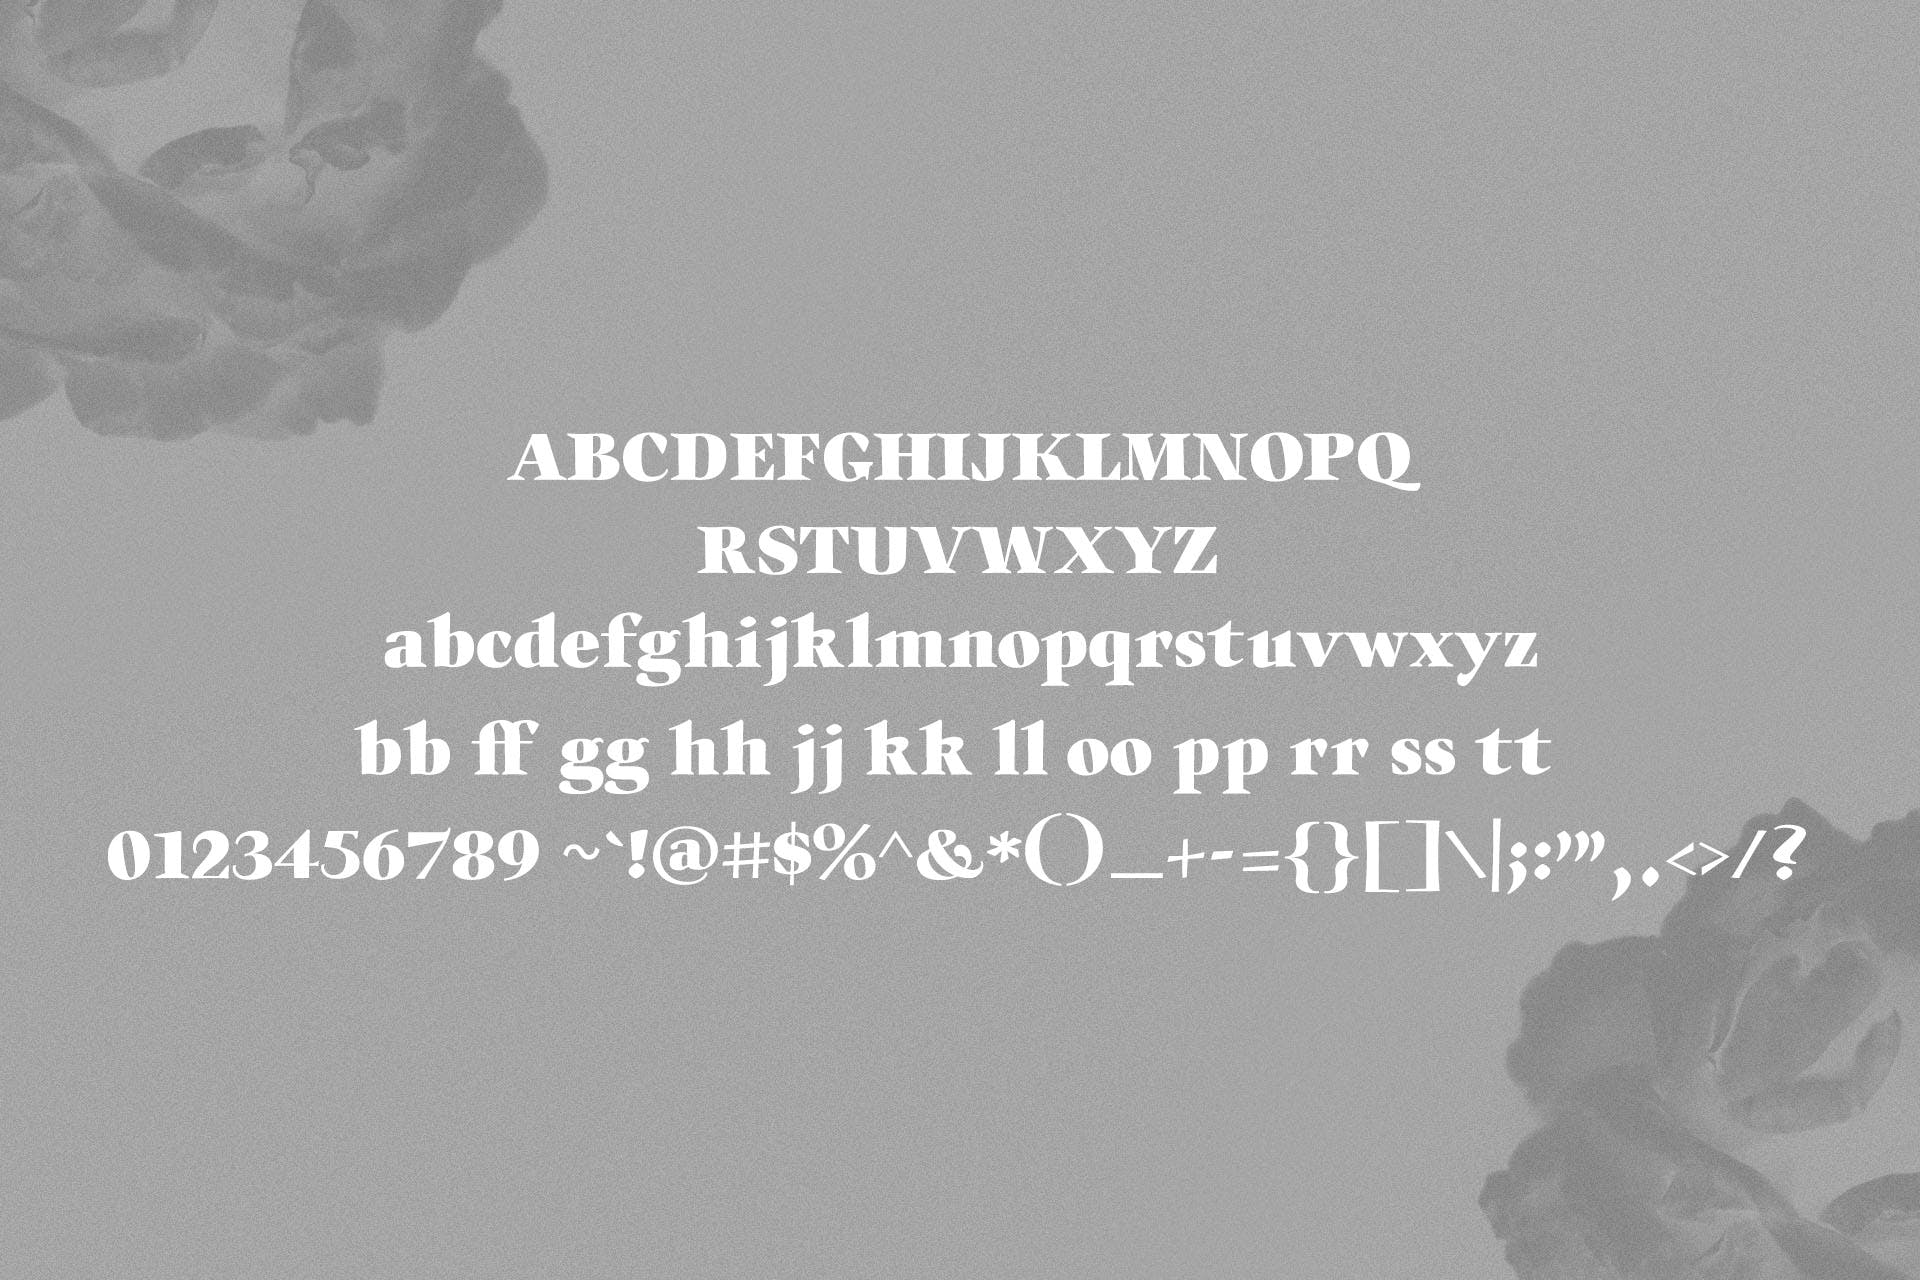 英文手写字体&印刷版式设计衬线字体二重奏组合字体 Willys Script Serif Font插图8